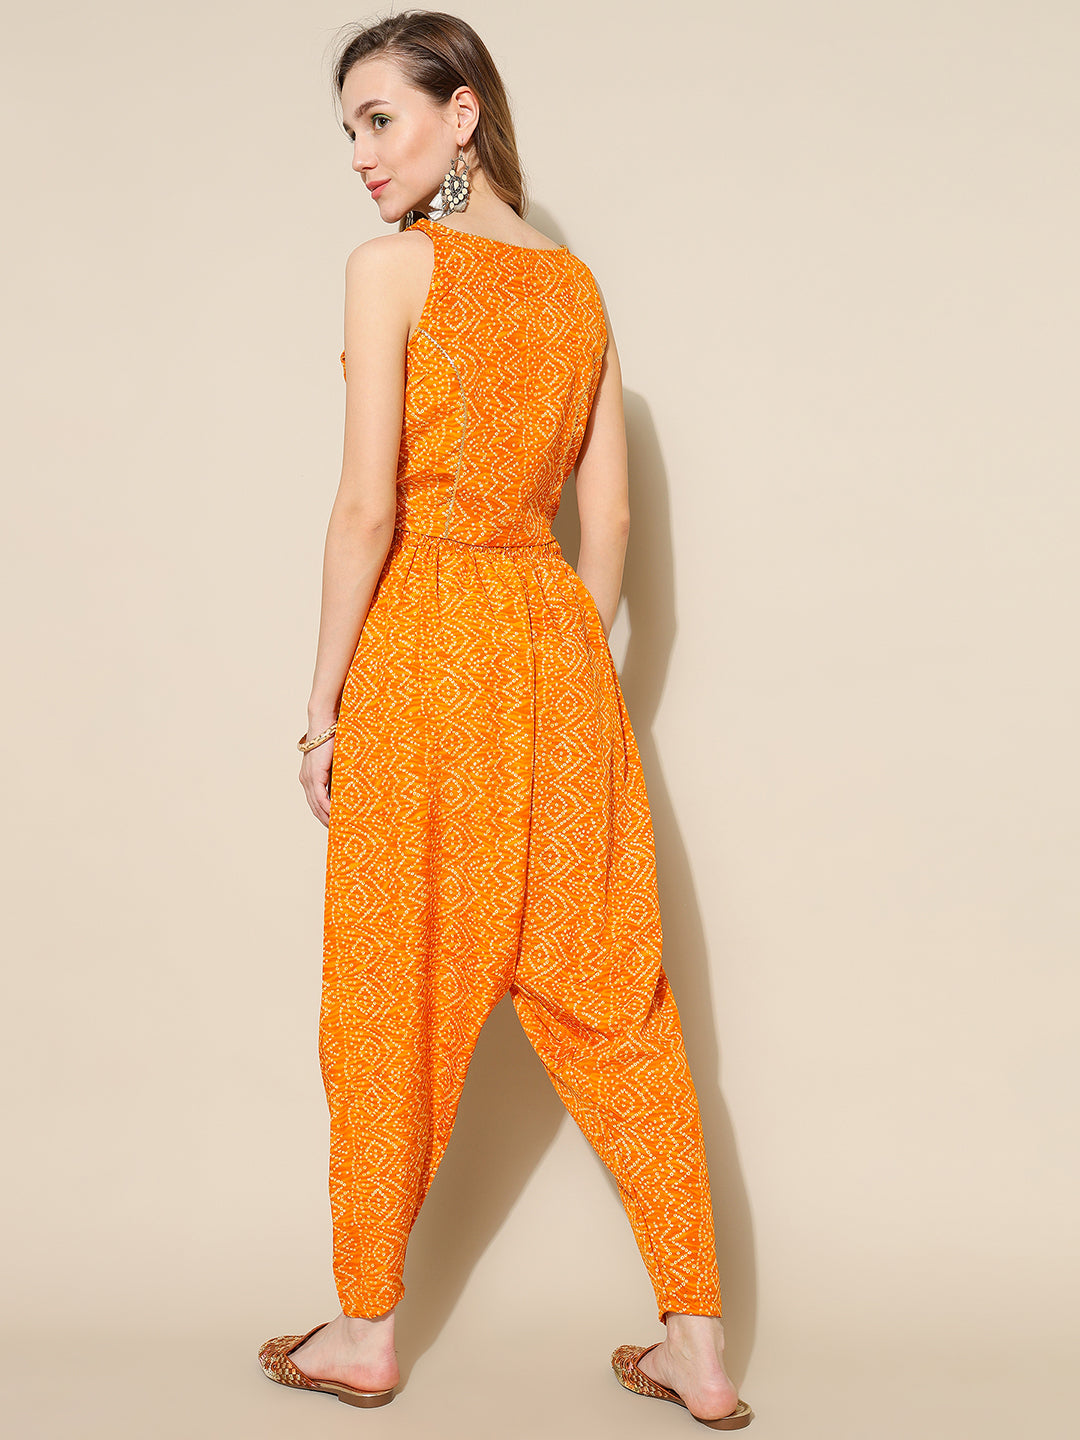 ANUSHIL Elegant Chundri Co-ord Set for Women - Perfect Ethnic Ensemble - Trendy Two-Piece Outfits(Yellow)